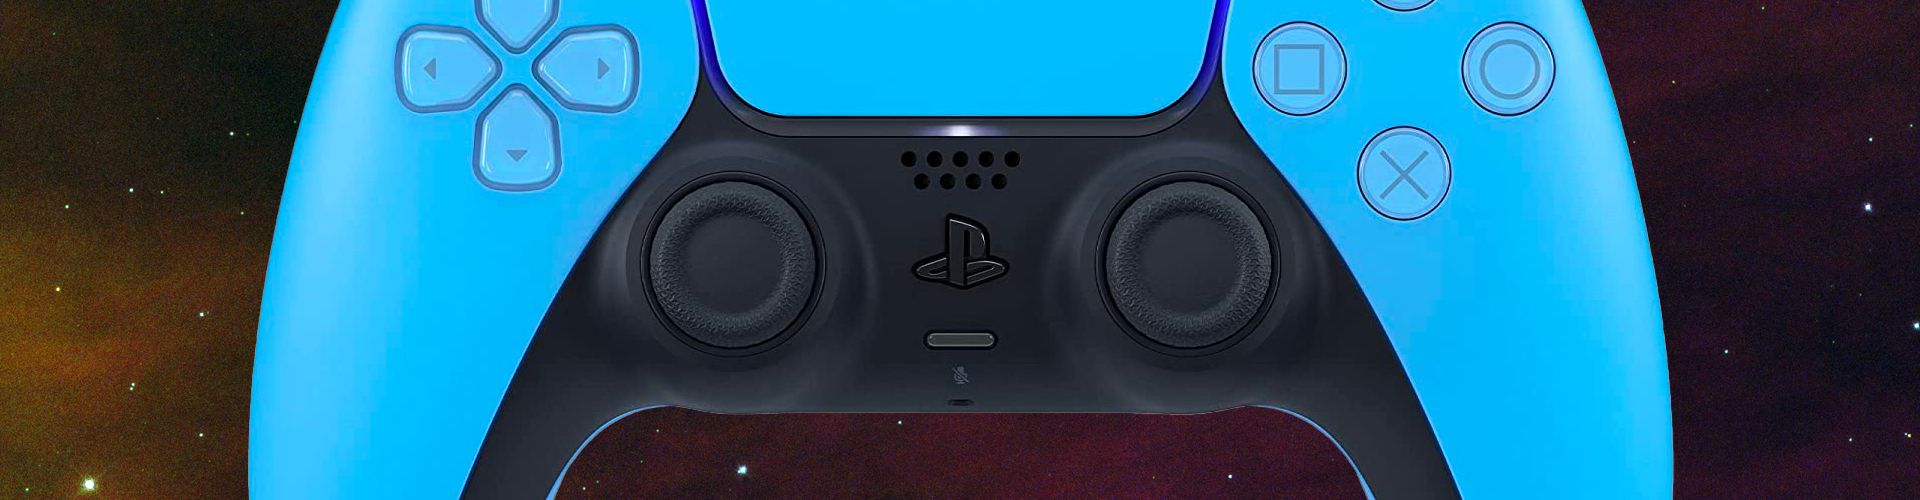 Les nouvelles couleurs de la manette sans fil DualSense arrivent le mois prochain, suivies de nouvelles coques de console PS5